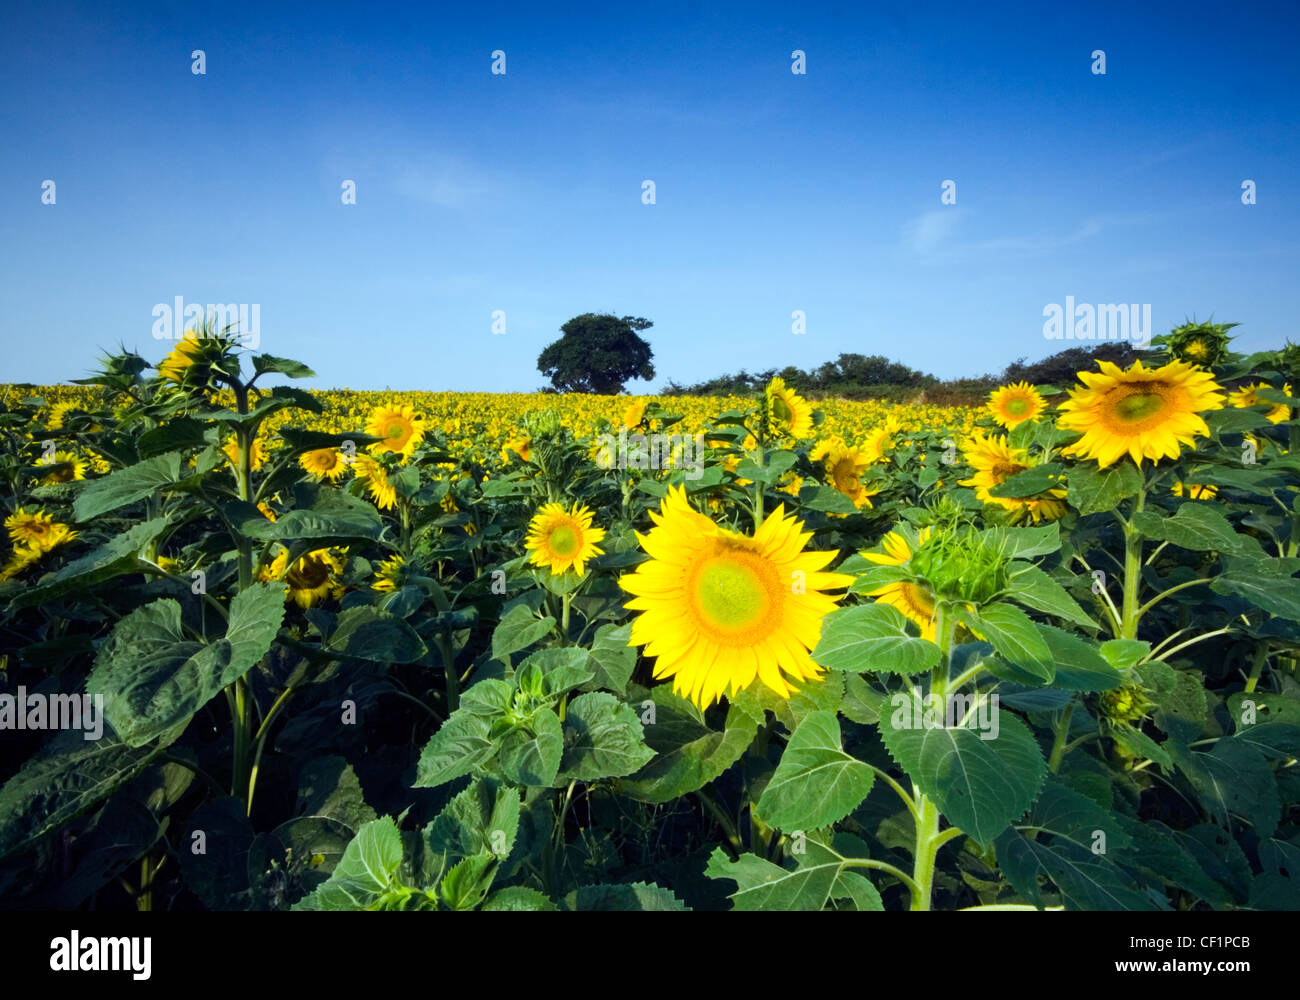 Feld von Sonnenblumen. Sonnenblumen wachsen können bis zu 3 Meter Höhe mit der Blüte 30 cm im Durchmesser erreichen. Stockfoto